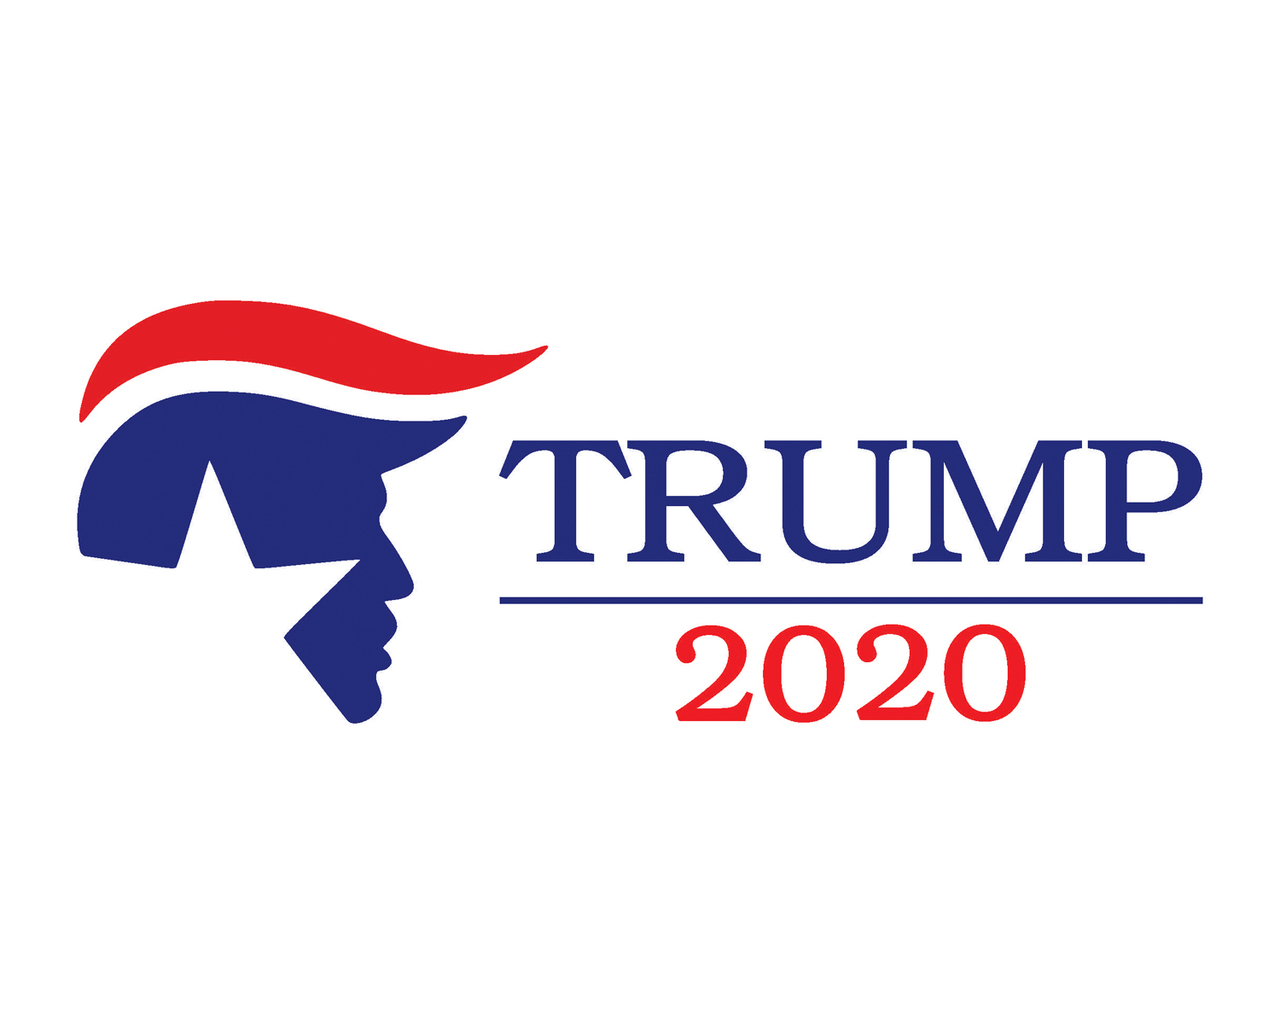 Trump 2020 wallpaper